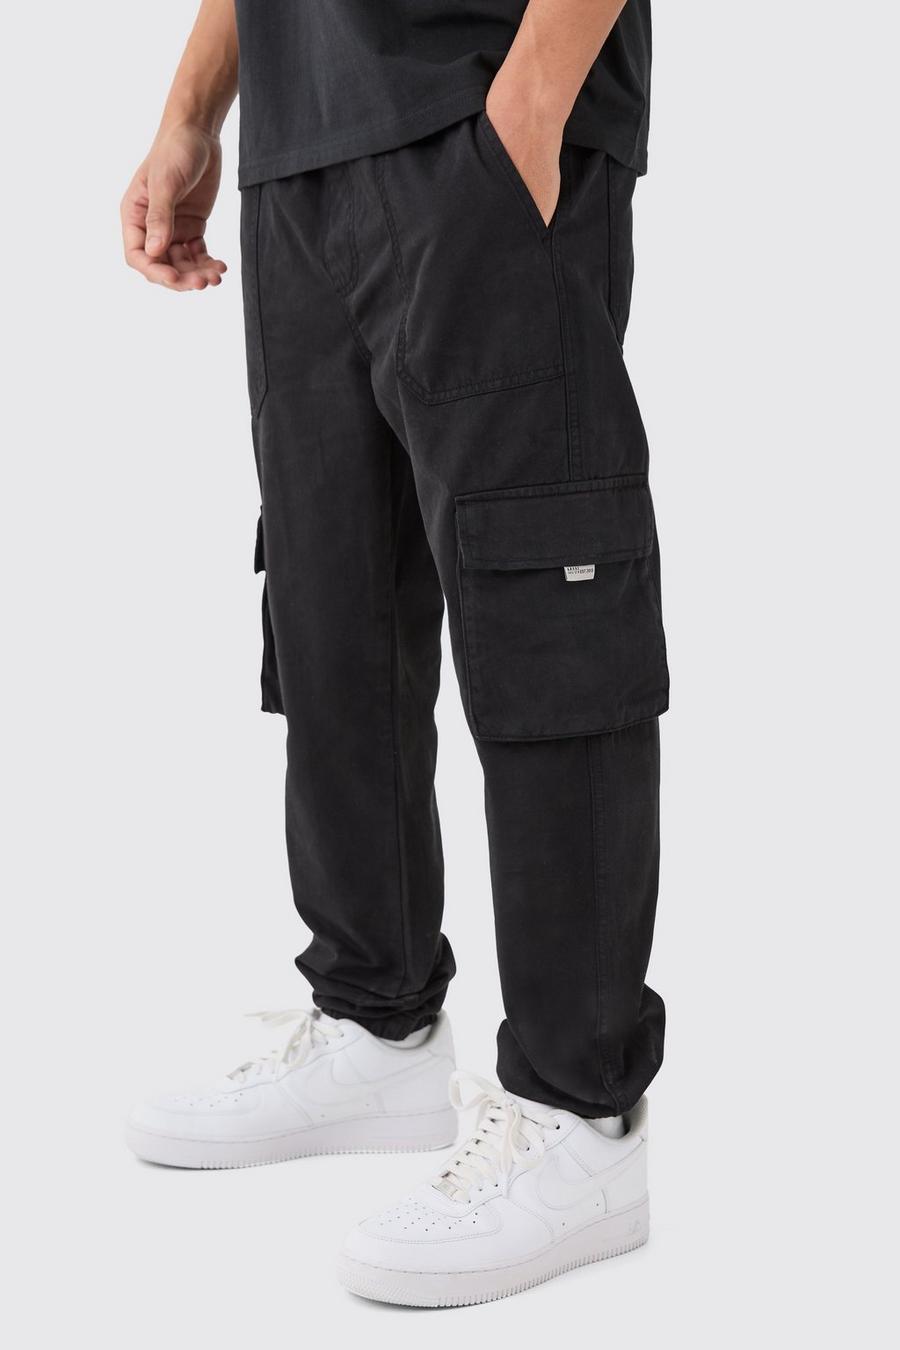 Pantaloni tuta Cargo Slim Fit con vita elasticizzata e logo, Black